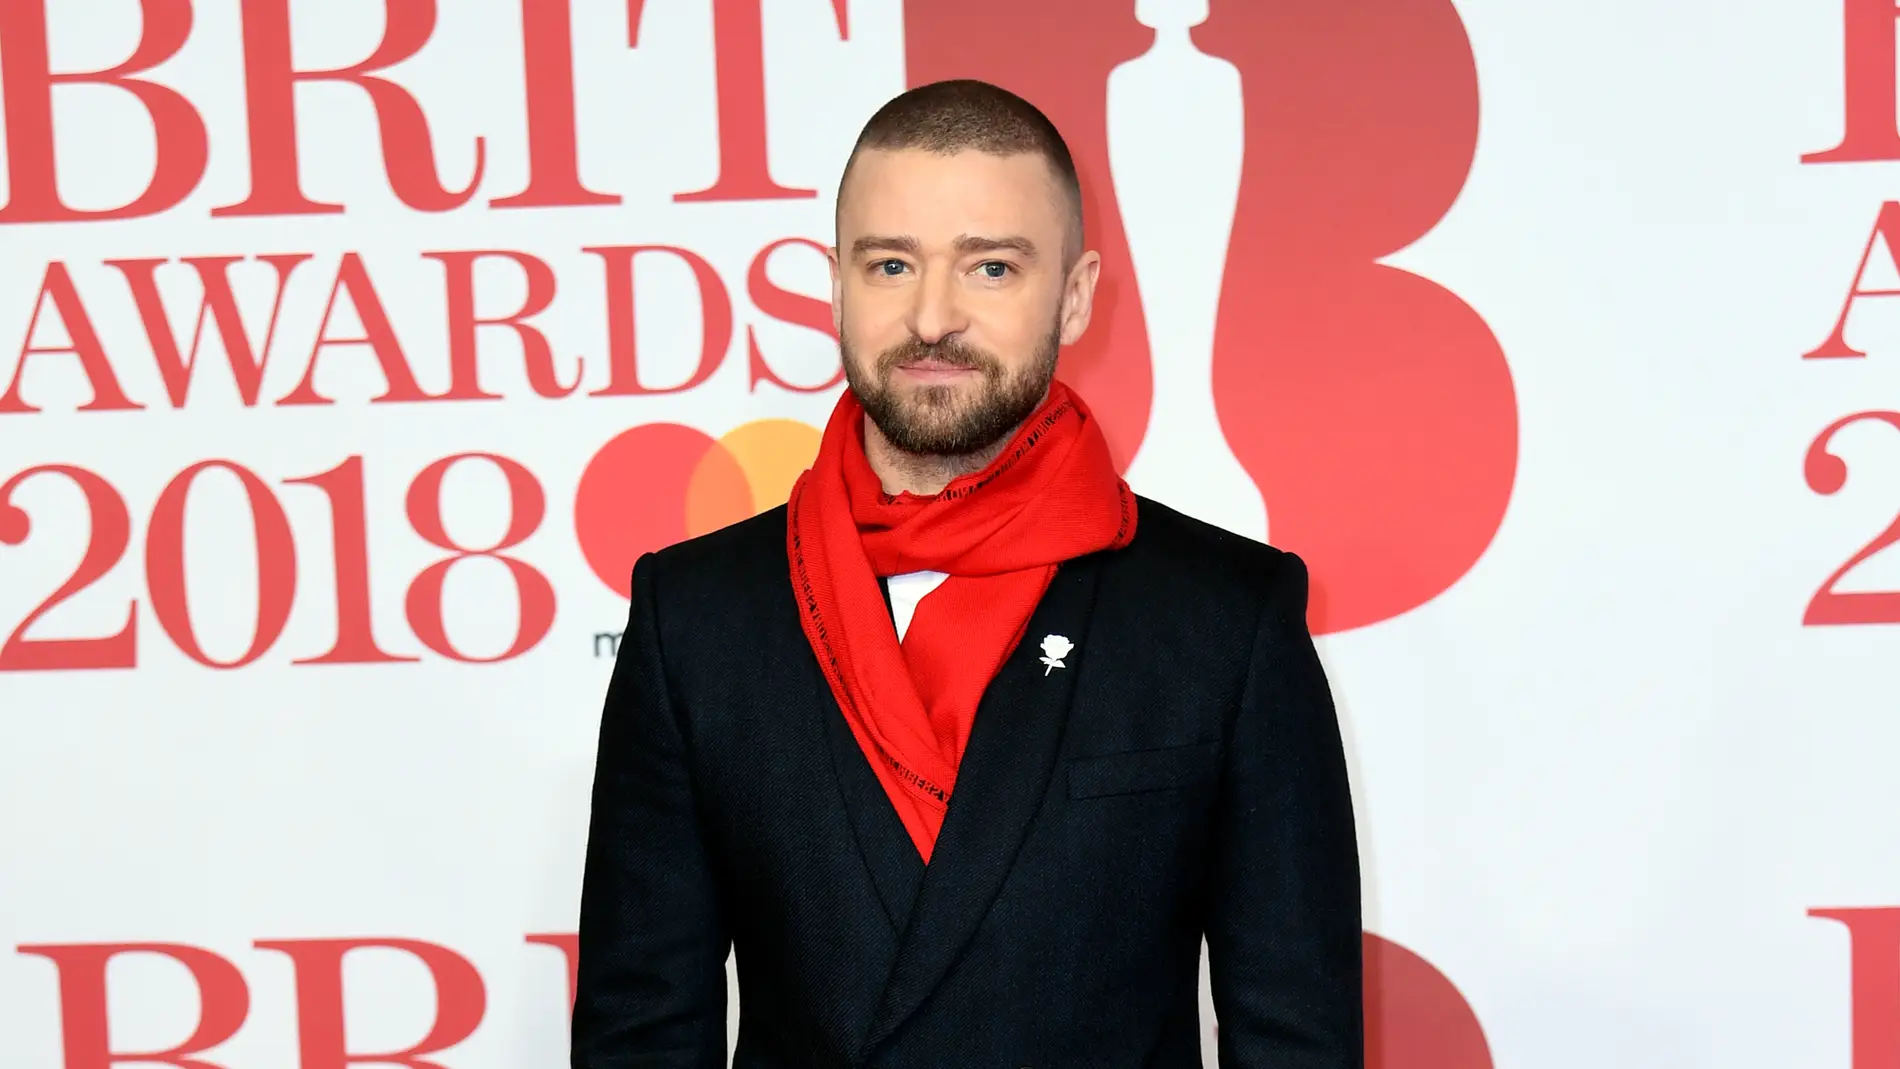 Justin Timberlake 